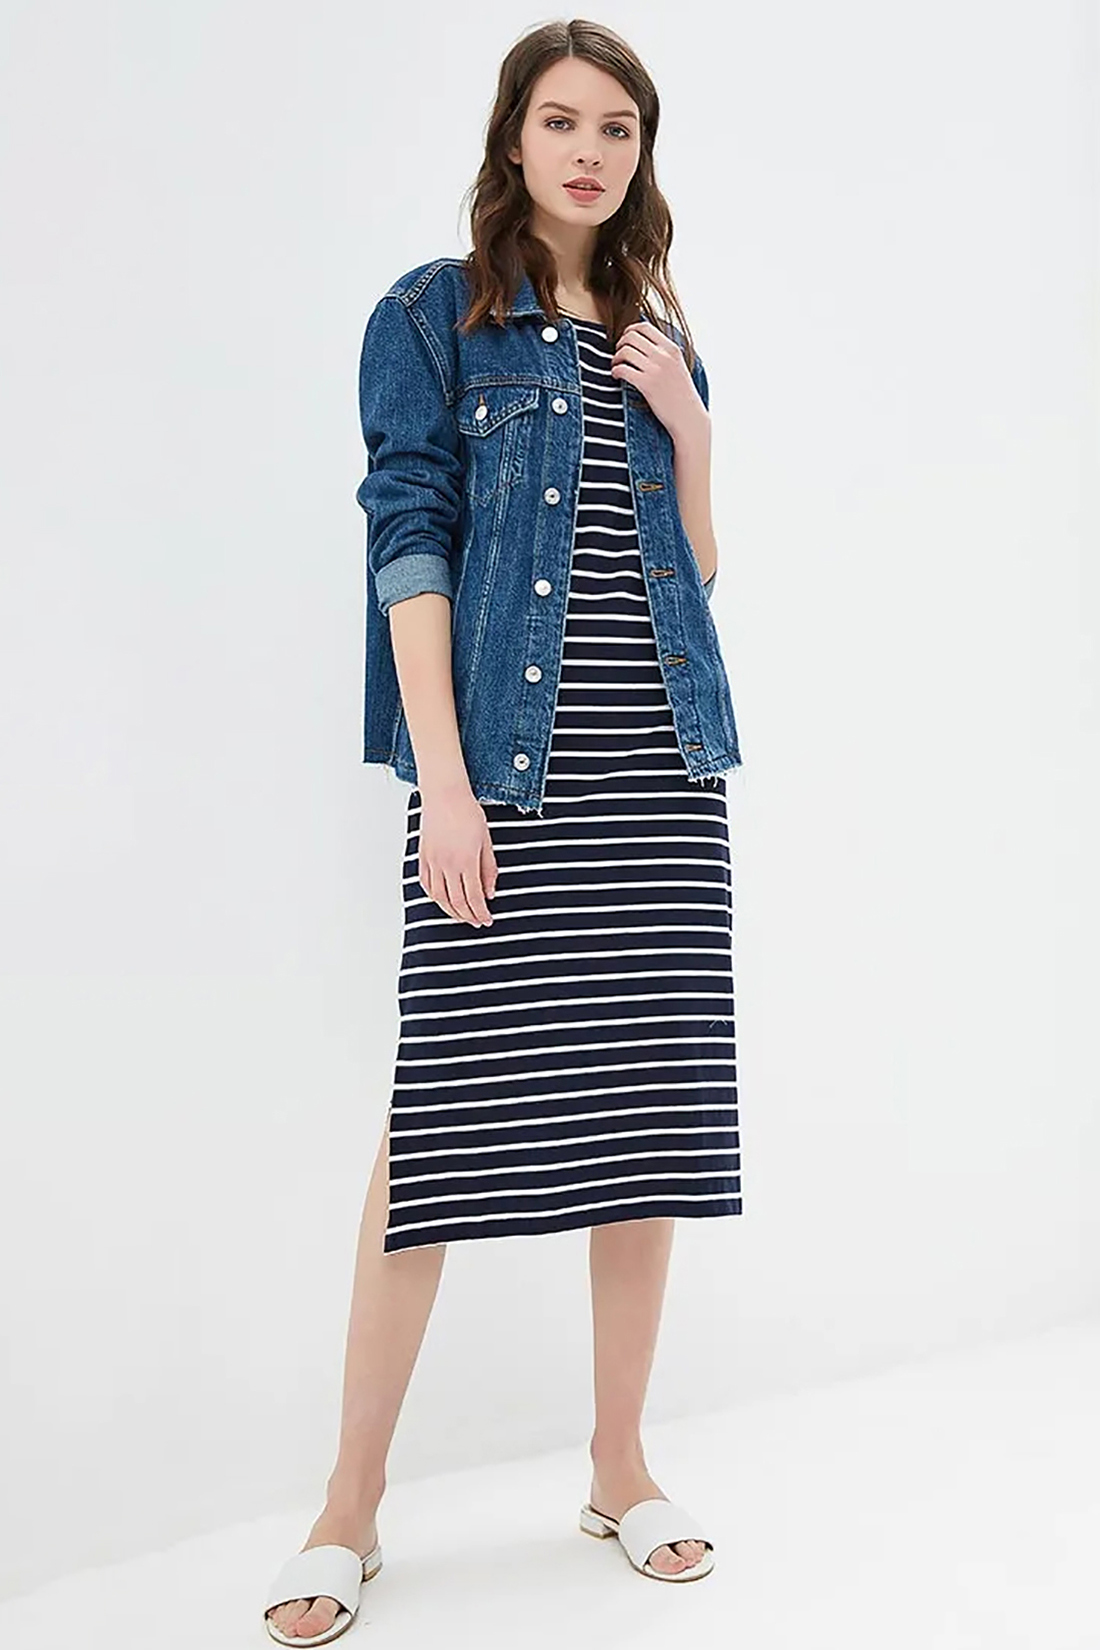 Миди-платье в полоску (арт. baon B459106), размер XS, цвет dark navy striped#синий Миди-платье в полоску (арт. baon B459106) - фото 1